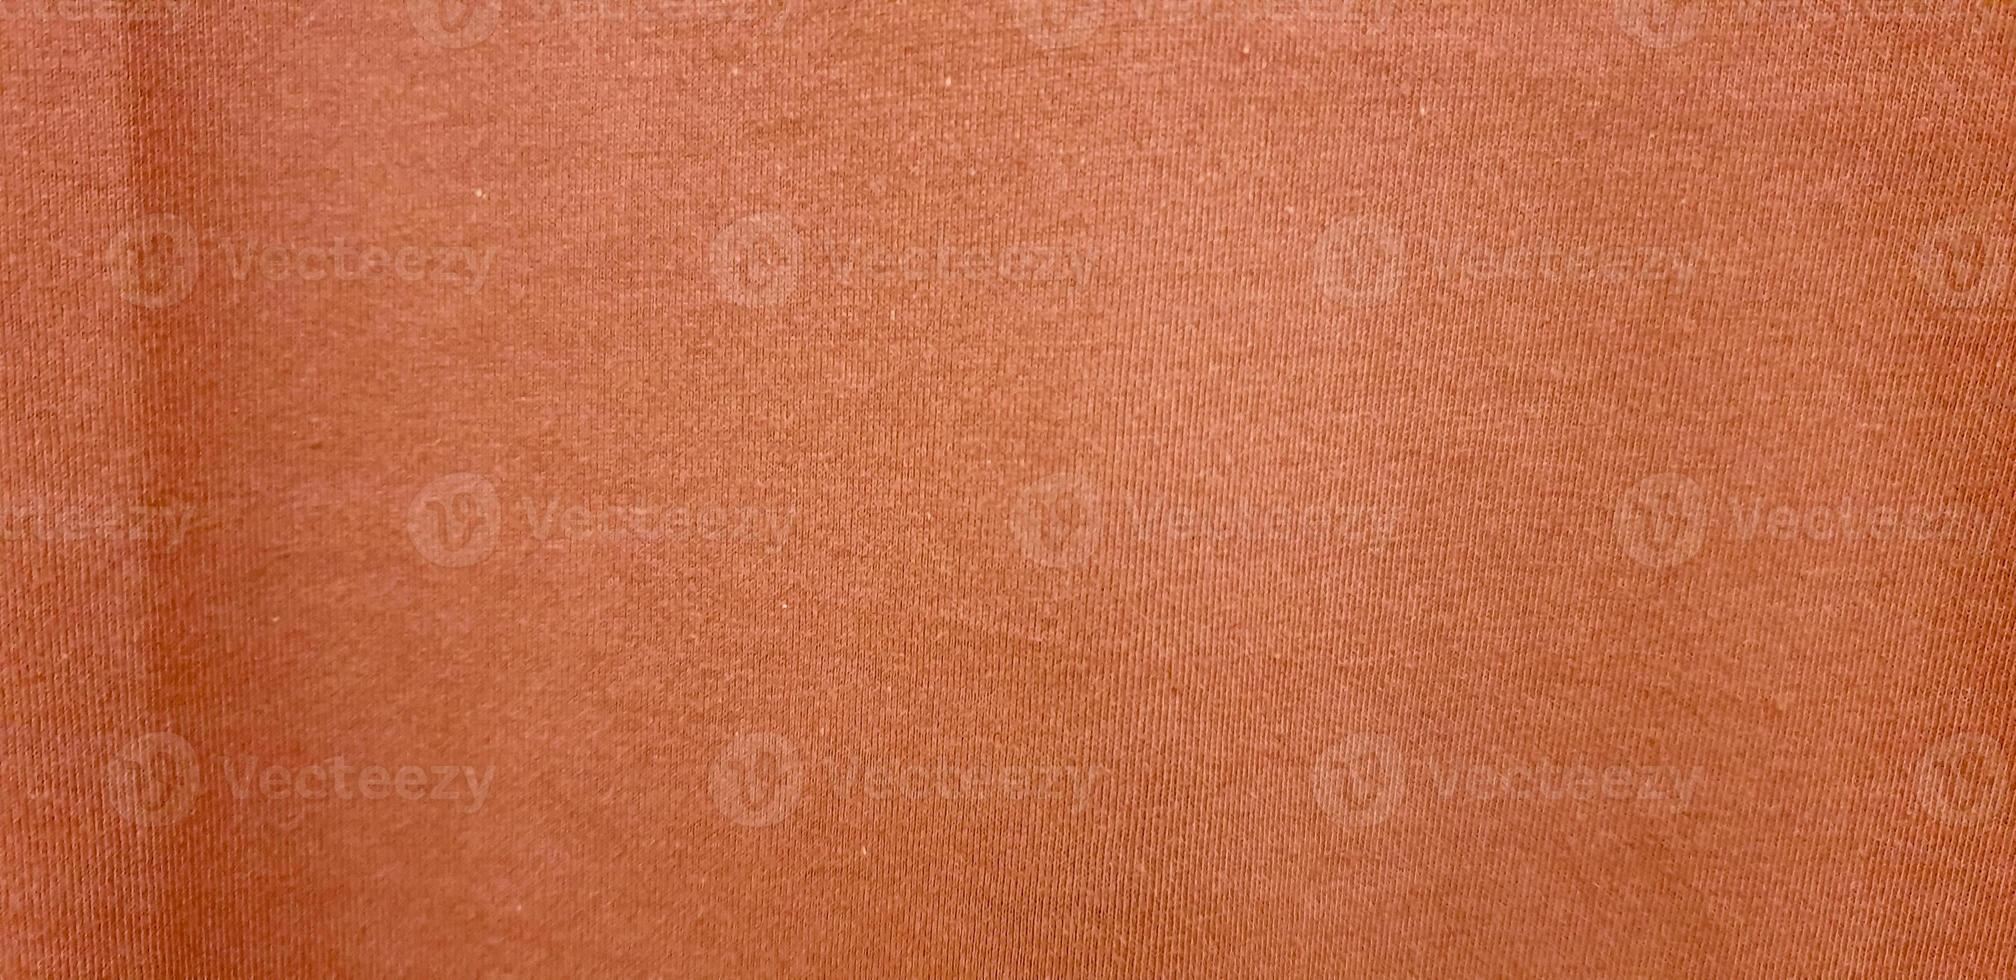 Orange gewebte weiche Stoffstruktur. orangefarbener Baumwollhintergrund. Kopieren Sie Platz für Bild oder Text foto